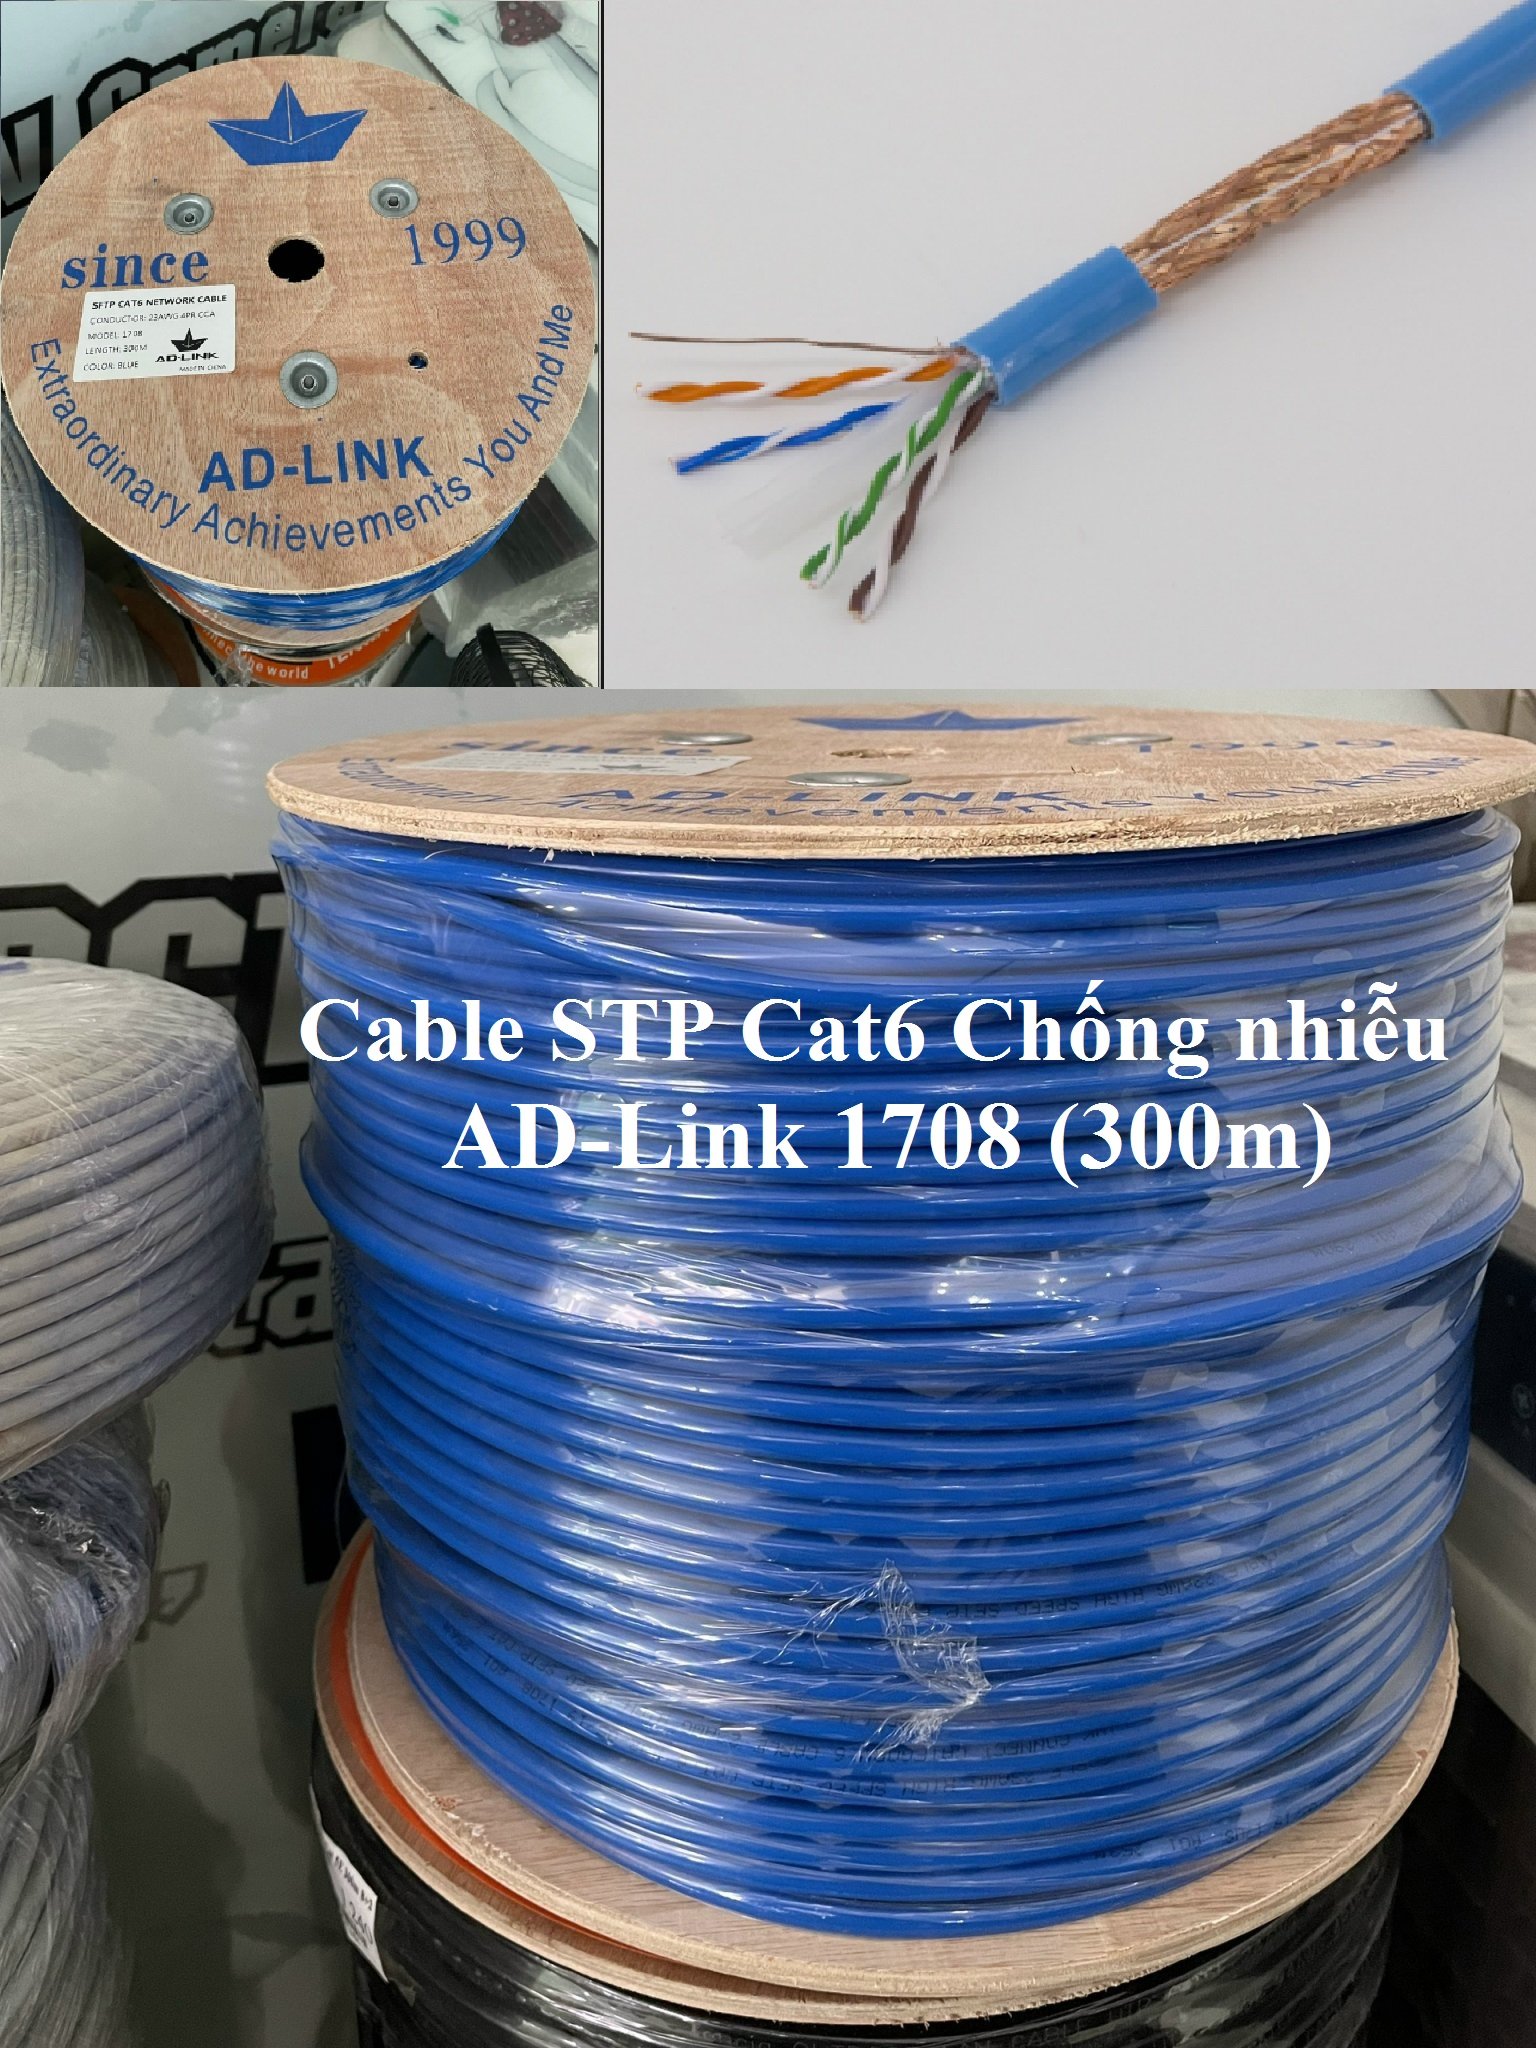 Cáp mạng chống nhiễu Cable STP Cat6 AD-Link 1708 (305m) Xanh  (Chống nhiễu)